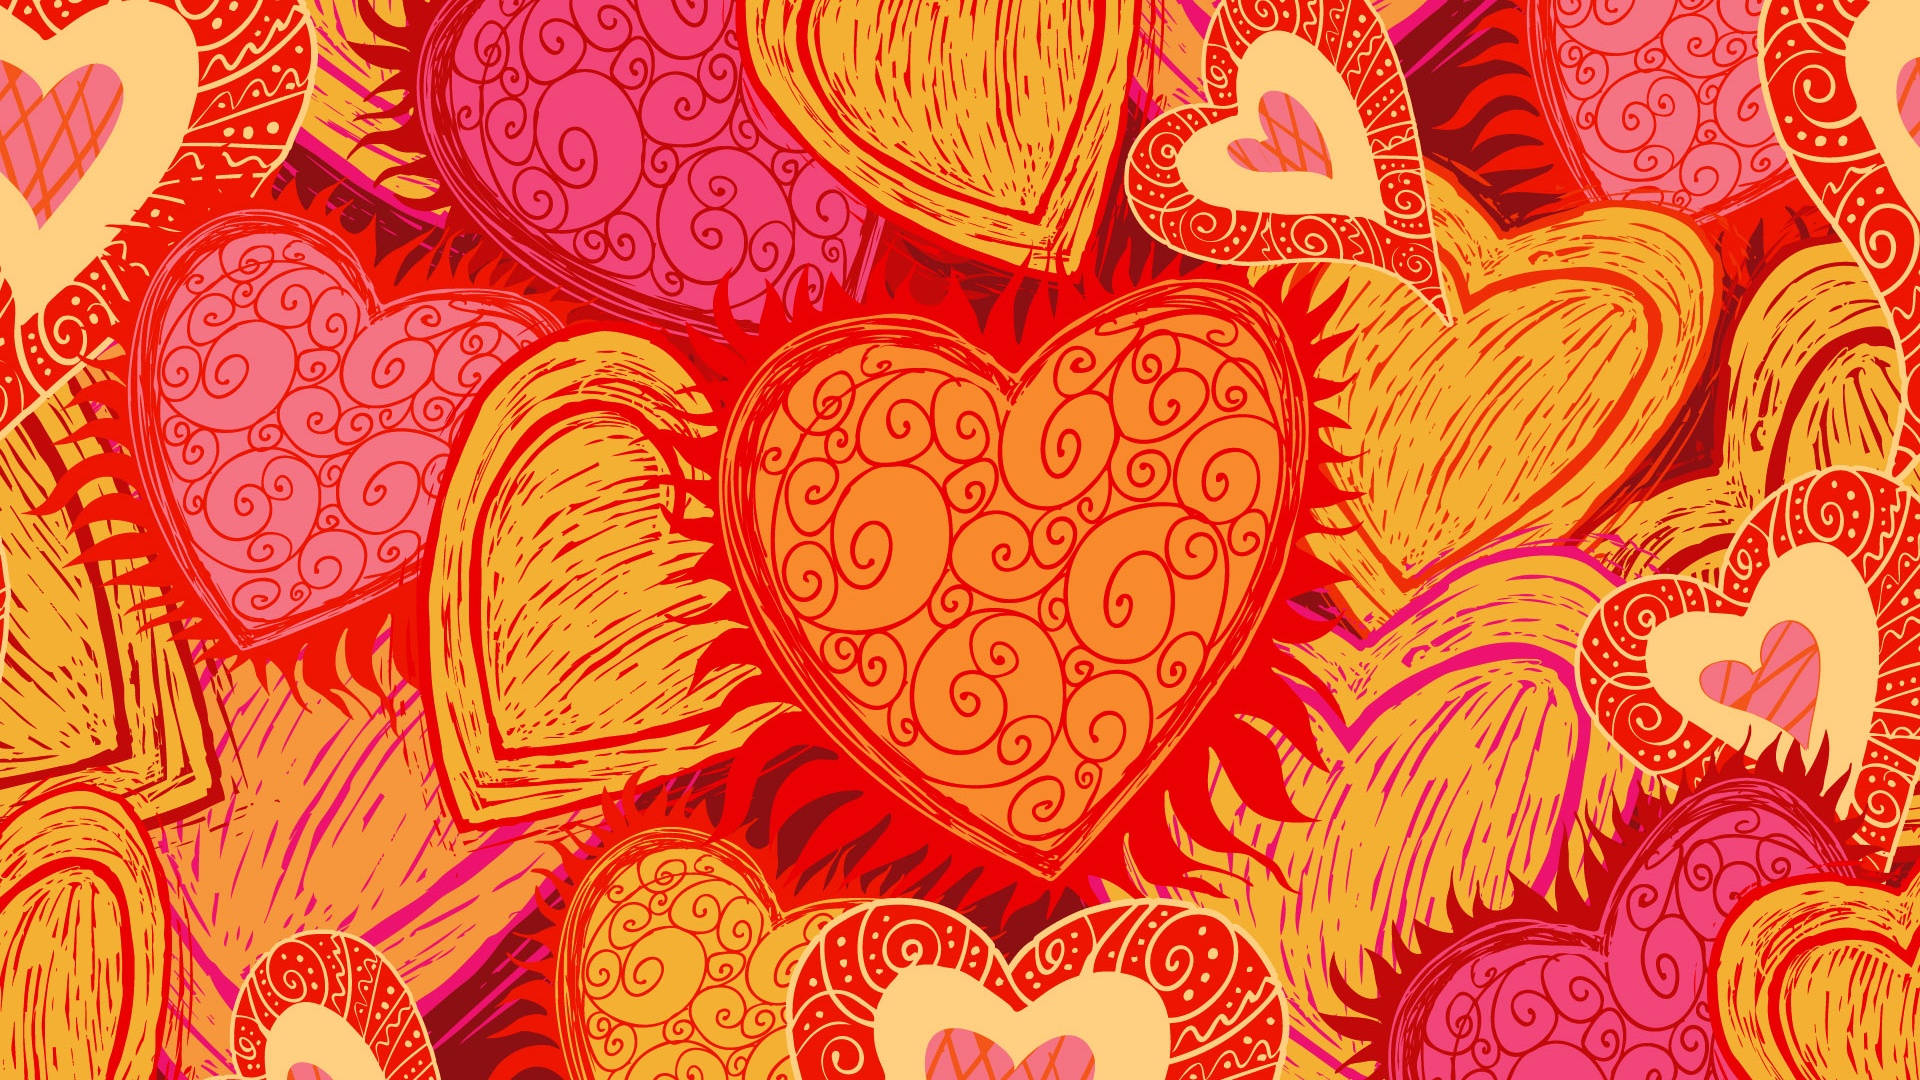 Firaalla Hjärtans Dag Med Kärlek Och Kreativitet På Din Dator- Eller Mobilskärm. Wallpaper